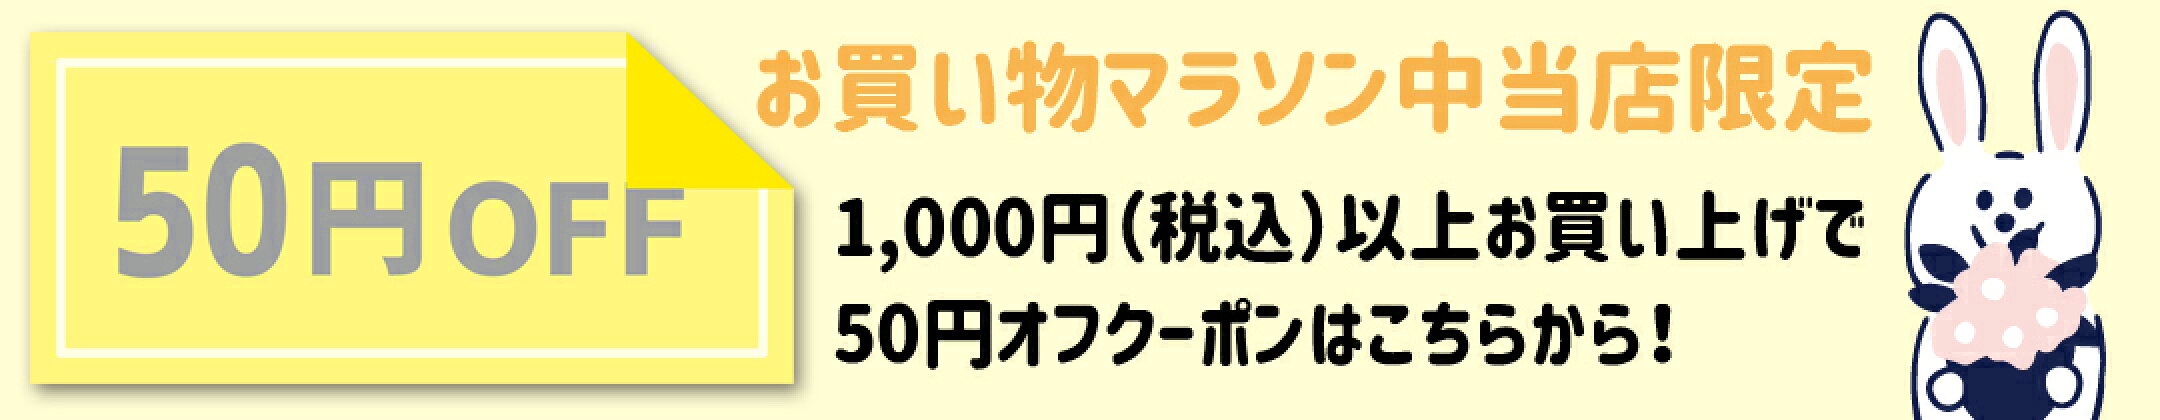 1000円お買い上げで50円オフクーポン